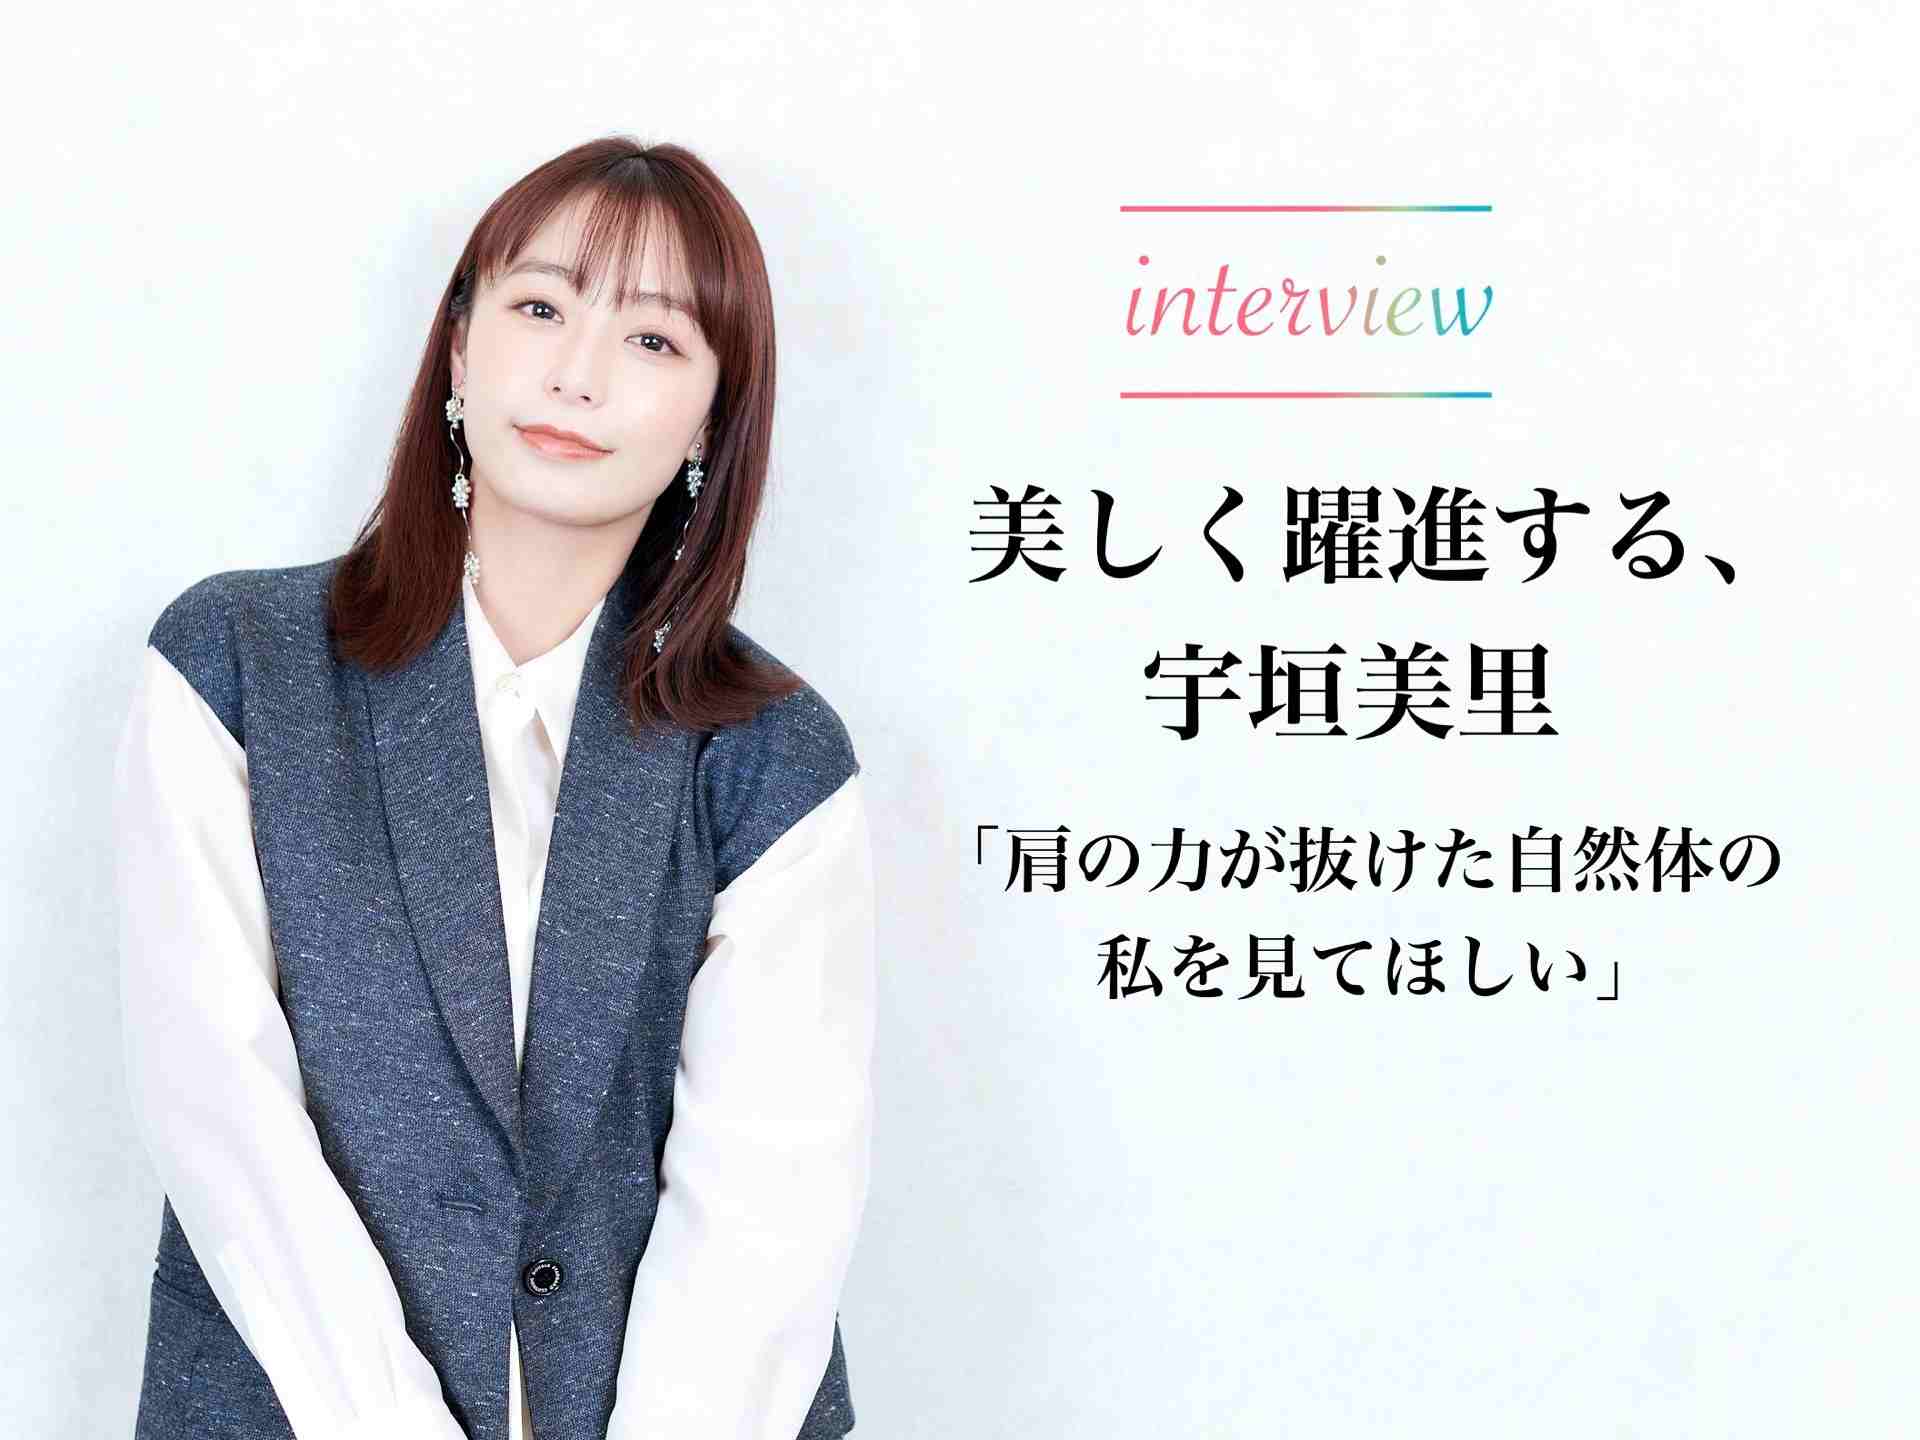 宇垣美里さんへのインタビュー記事を公開しました。